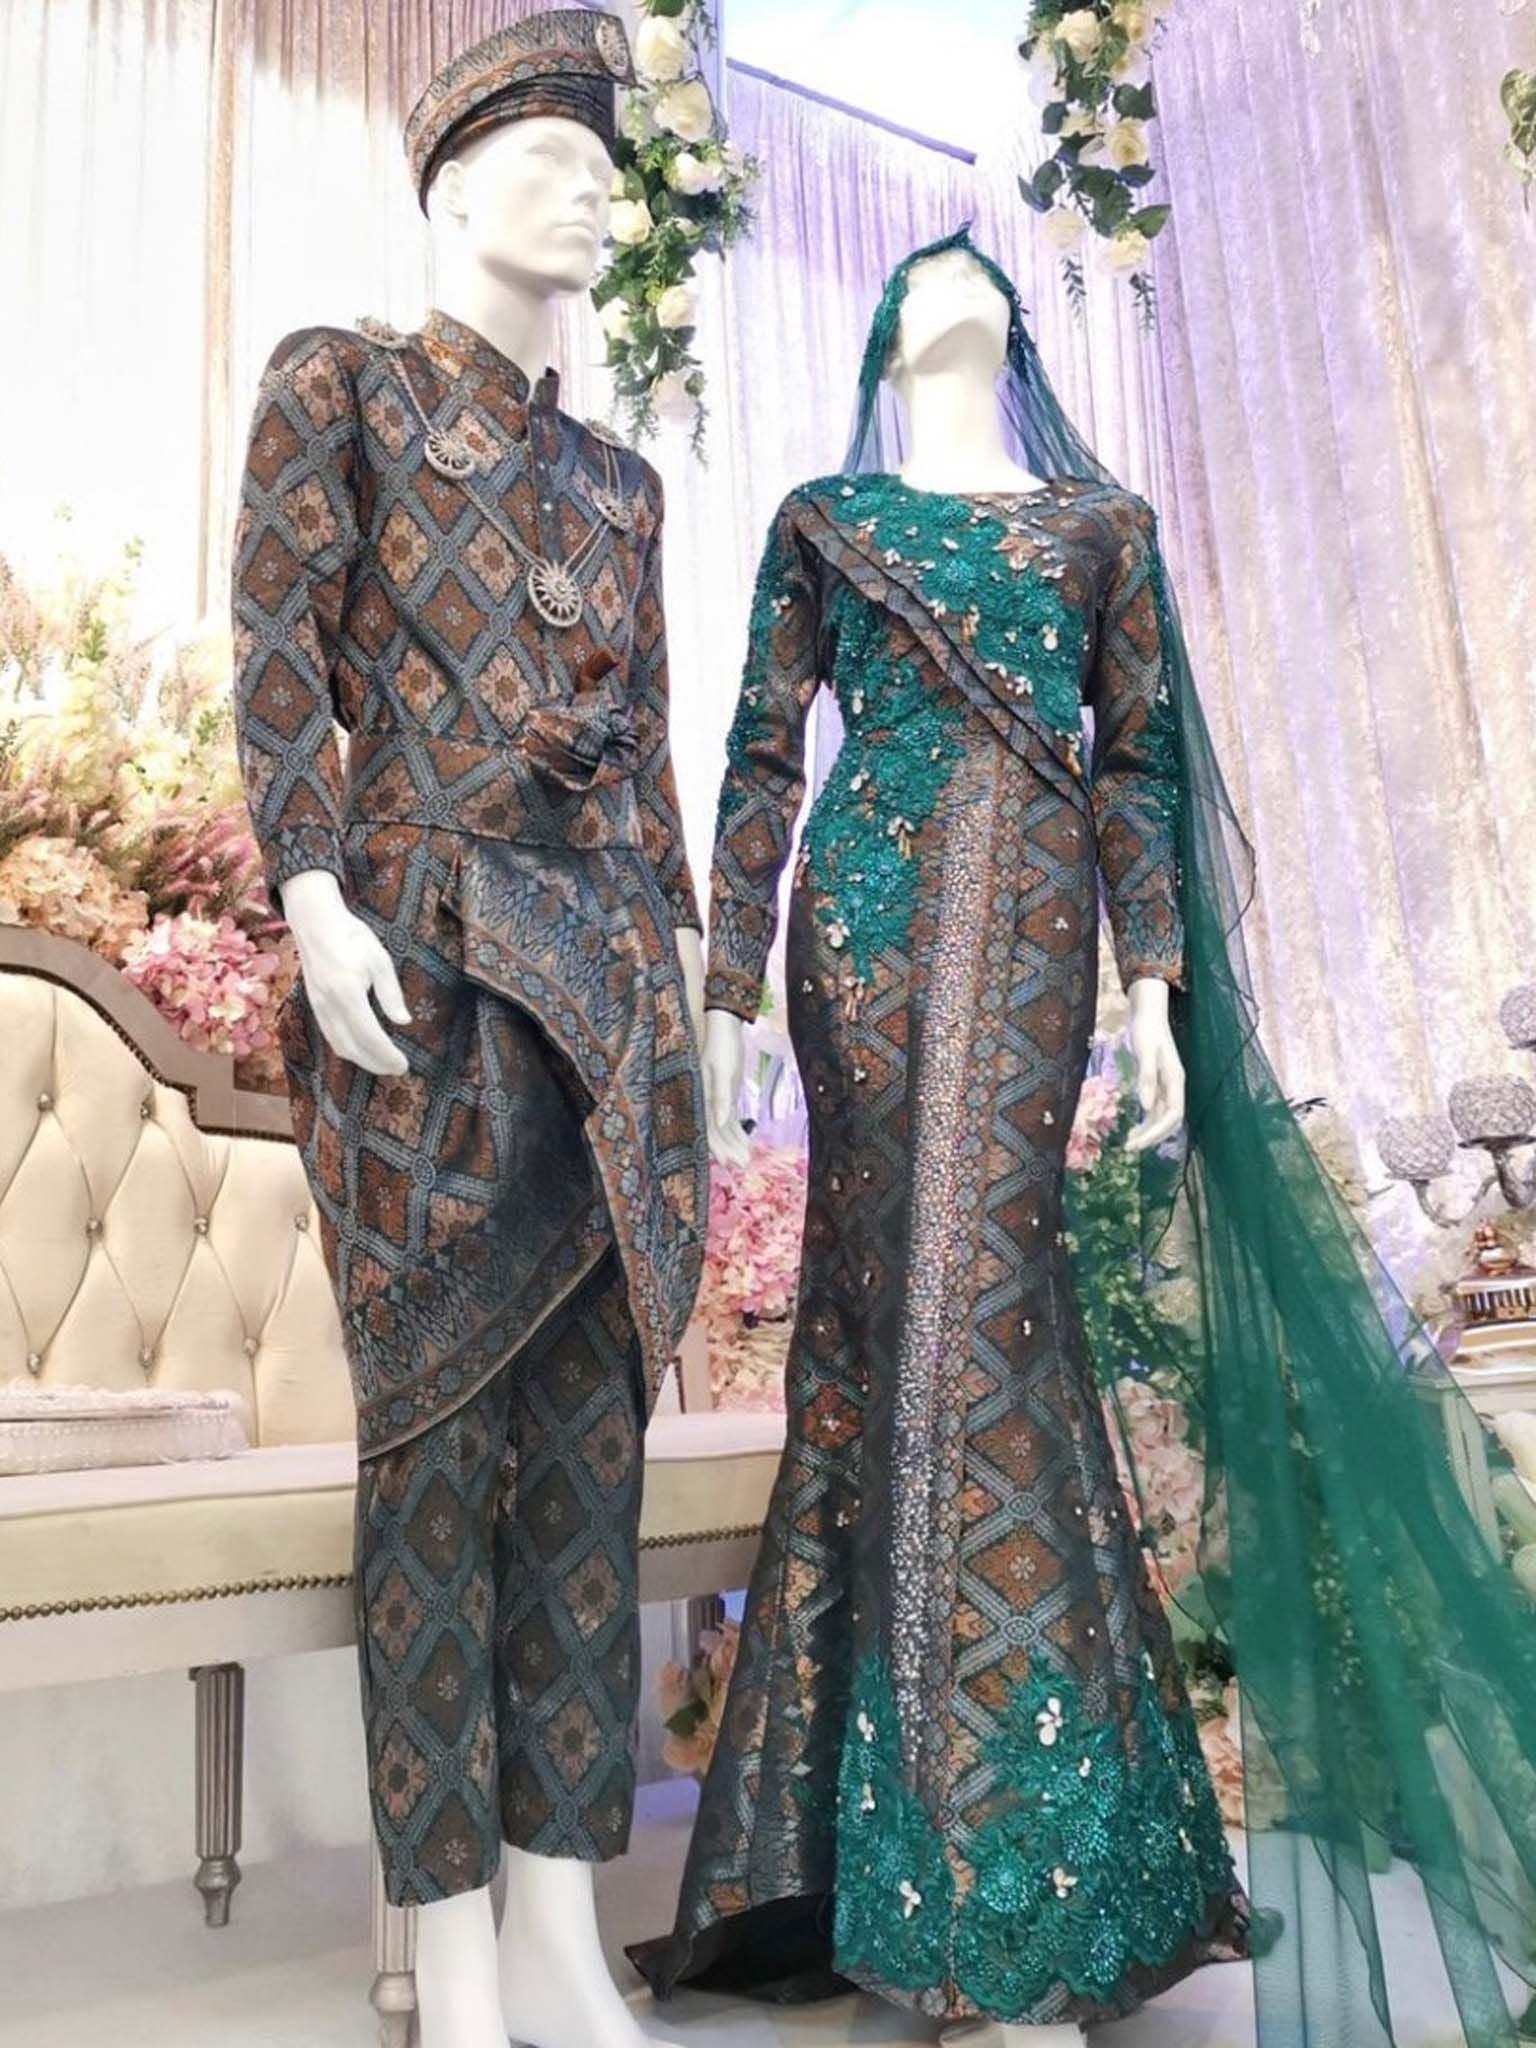 EMELDA SARI - Songket Wedding Dress, Emerald Green and Brown dari PP Signature. Tempah Baju Pengantin online atau set temujanji anda di butik hari ini!